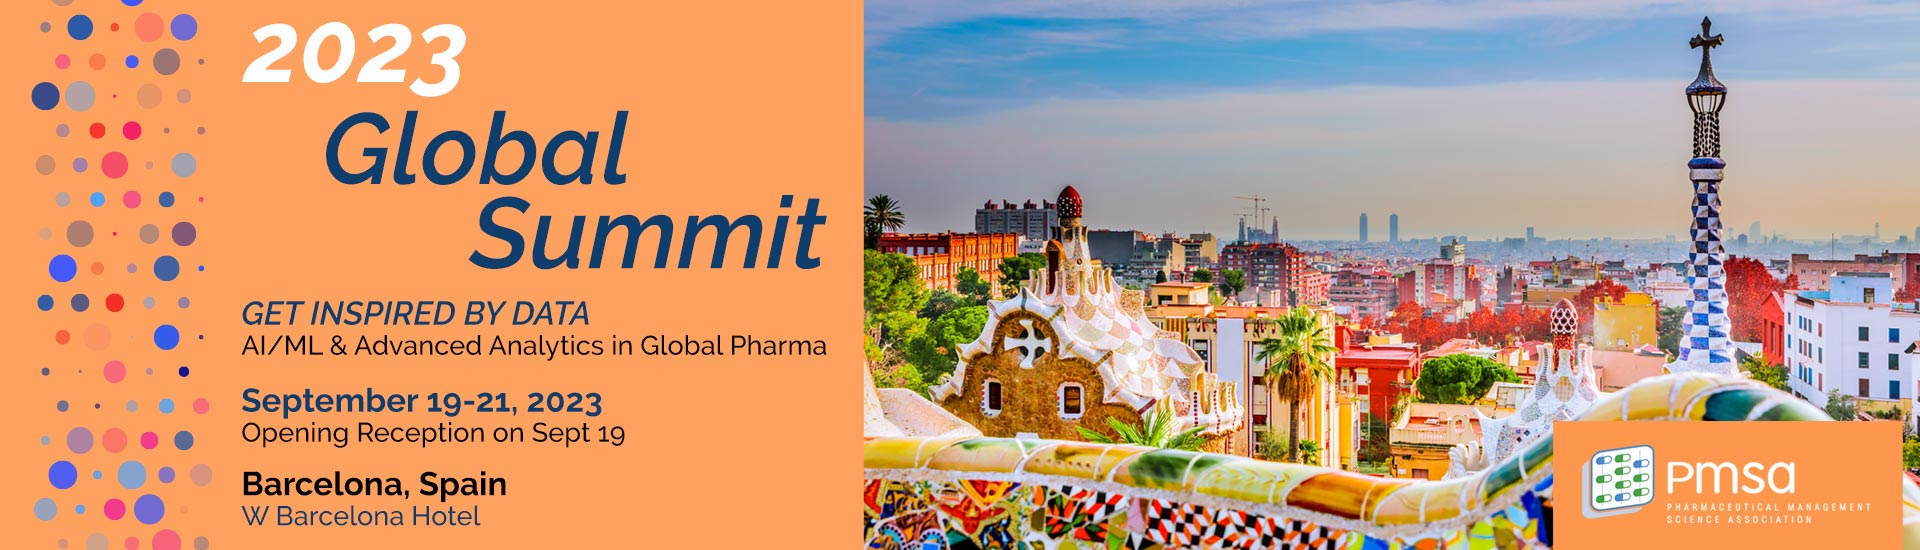 Global Summit • Barcelona, Spain • September 19-21